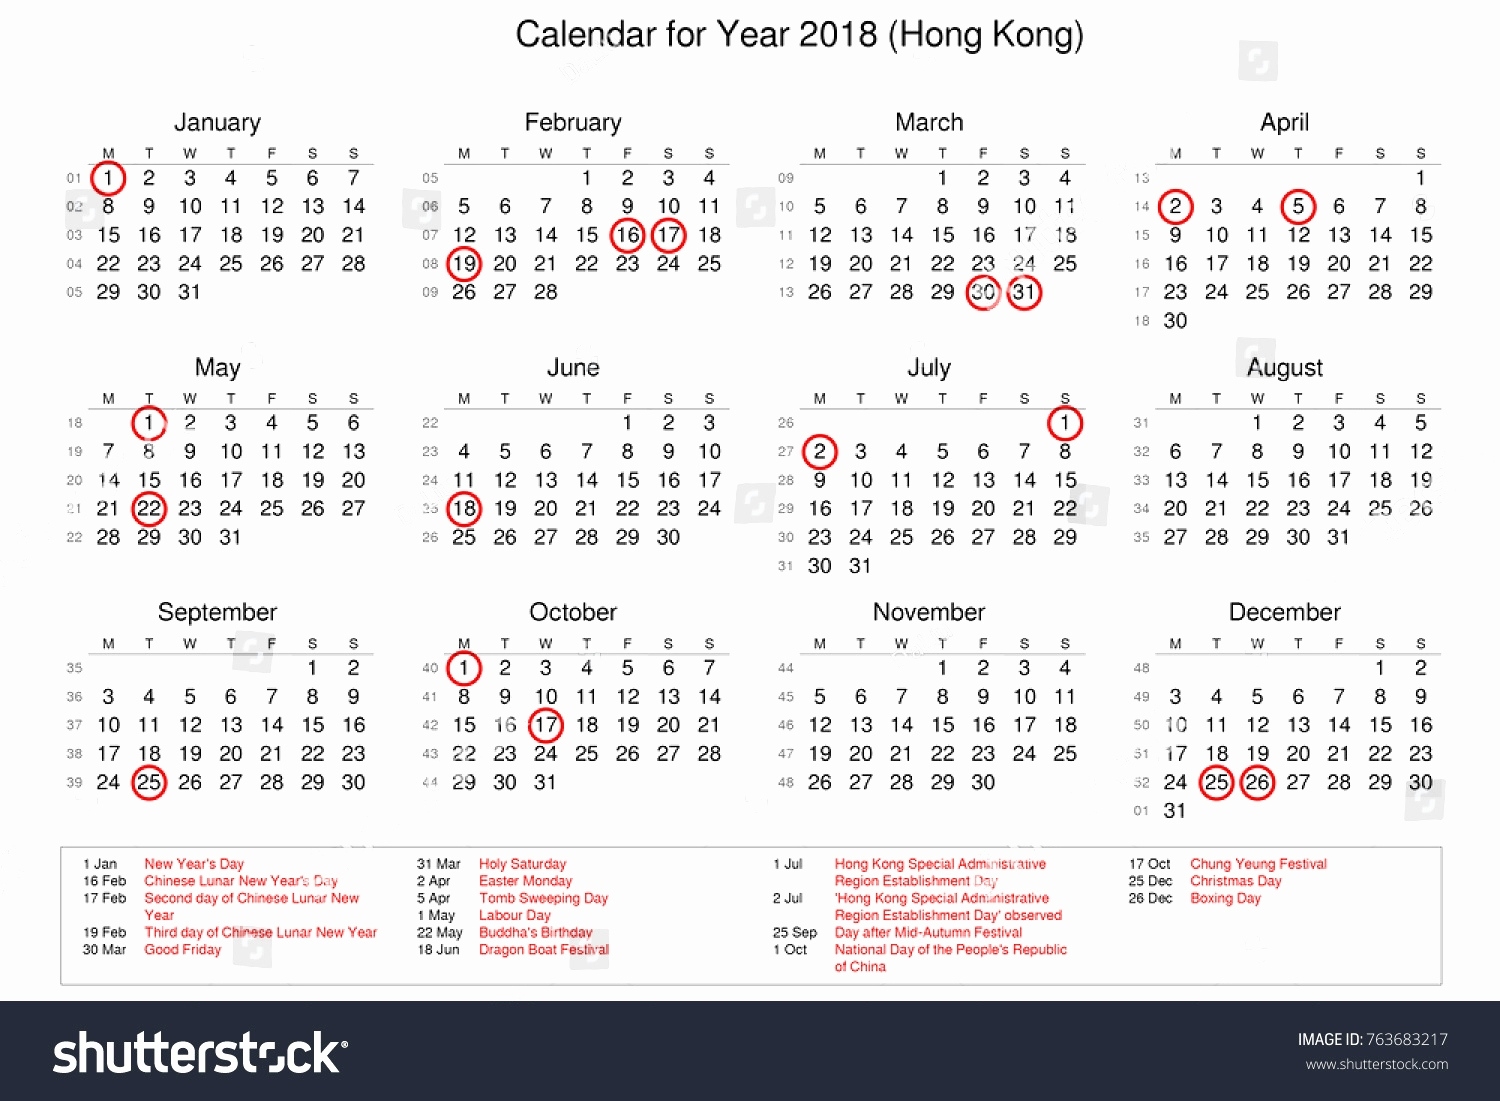 Inspirational 4 Sample 2019 Calendar Hong Kong 2019 Calendar Calendar Printing Hong Kong